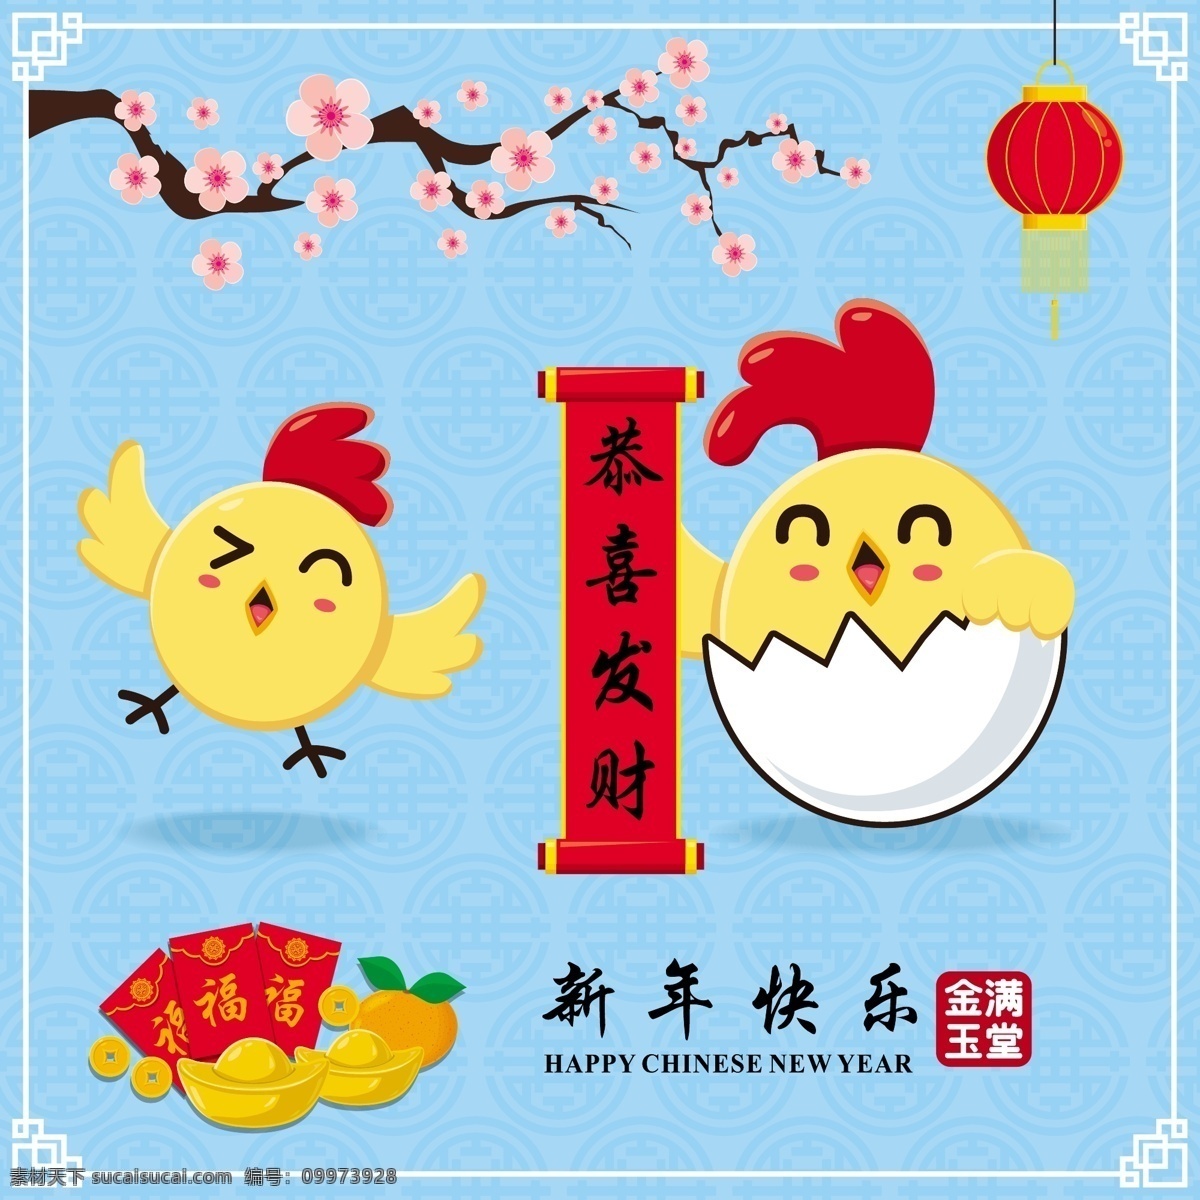 中国 卡通 新年 海报 中国新年海报 新年元素 新年背景 中国风 中国元素 新年快乐 卡通新年 财神 儿童